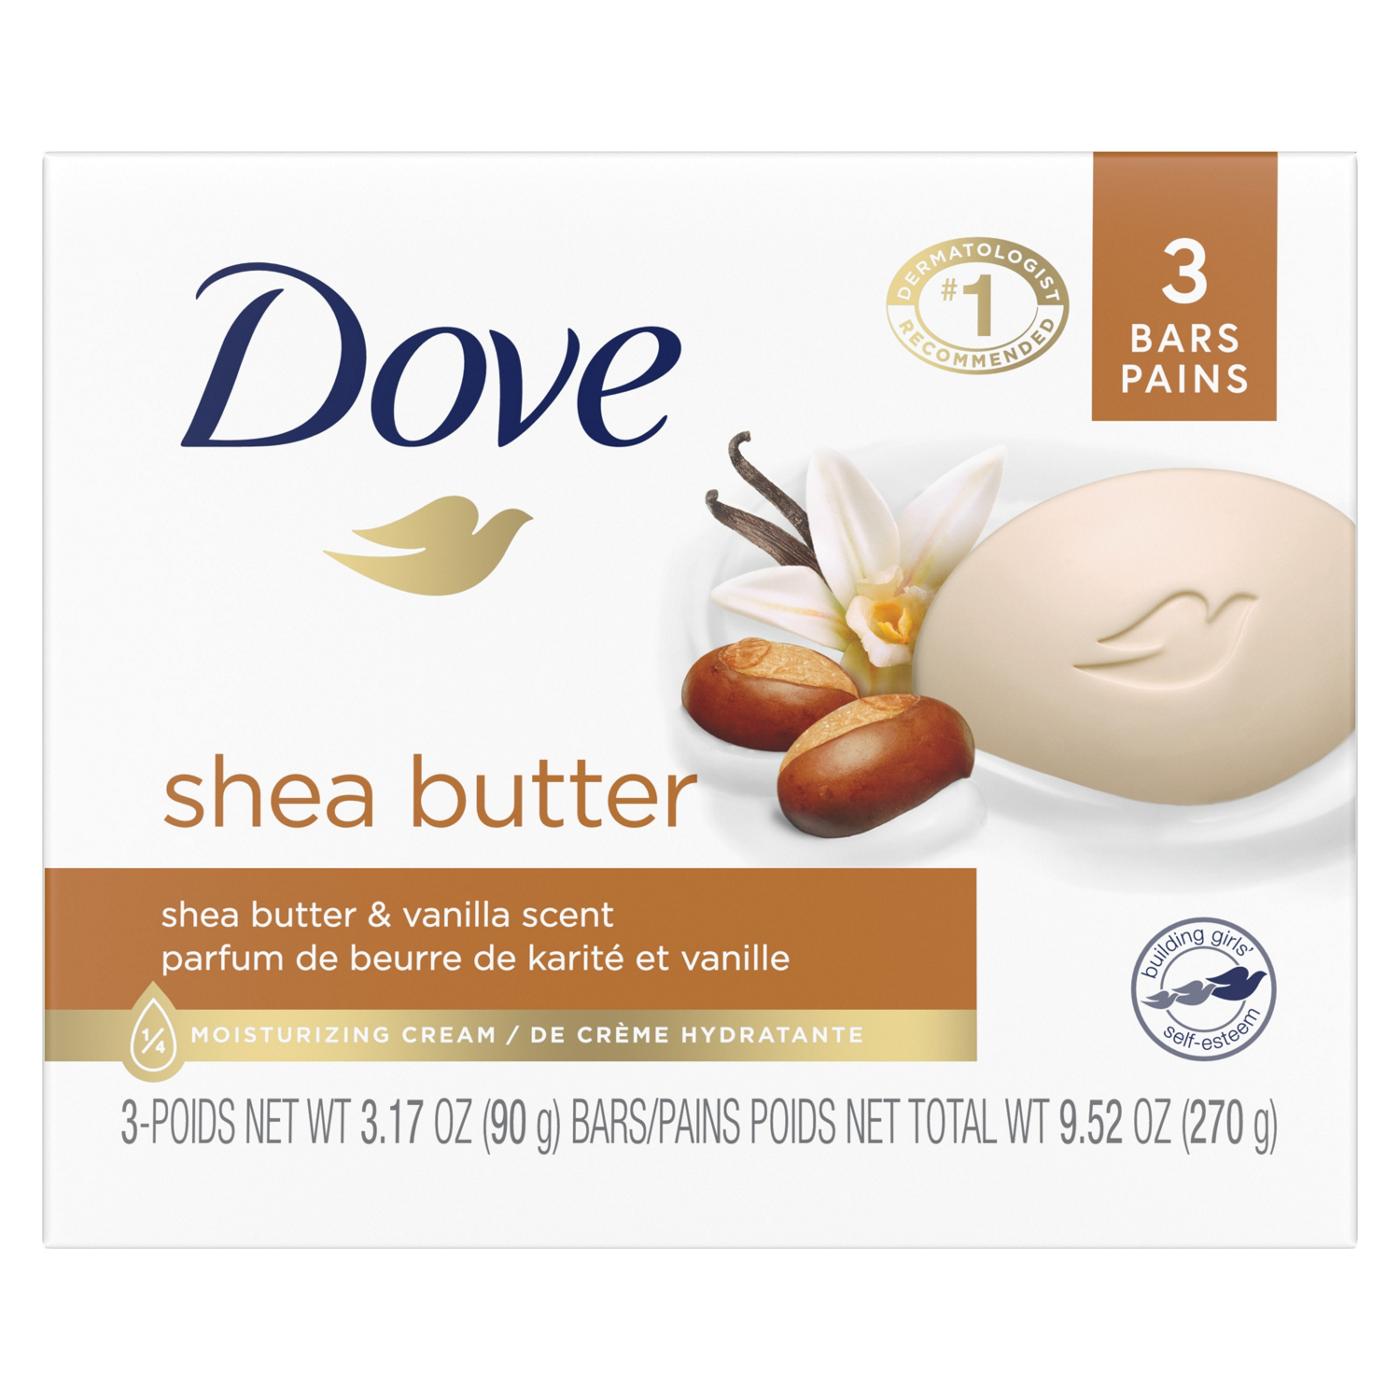 Dove Beauty Bar Shea Butter 4 oz, 2 Bar